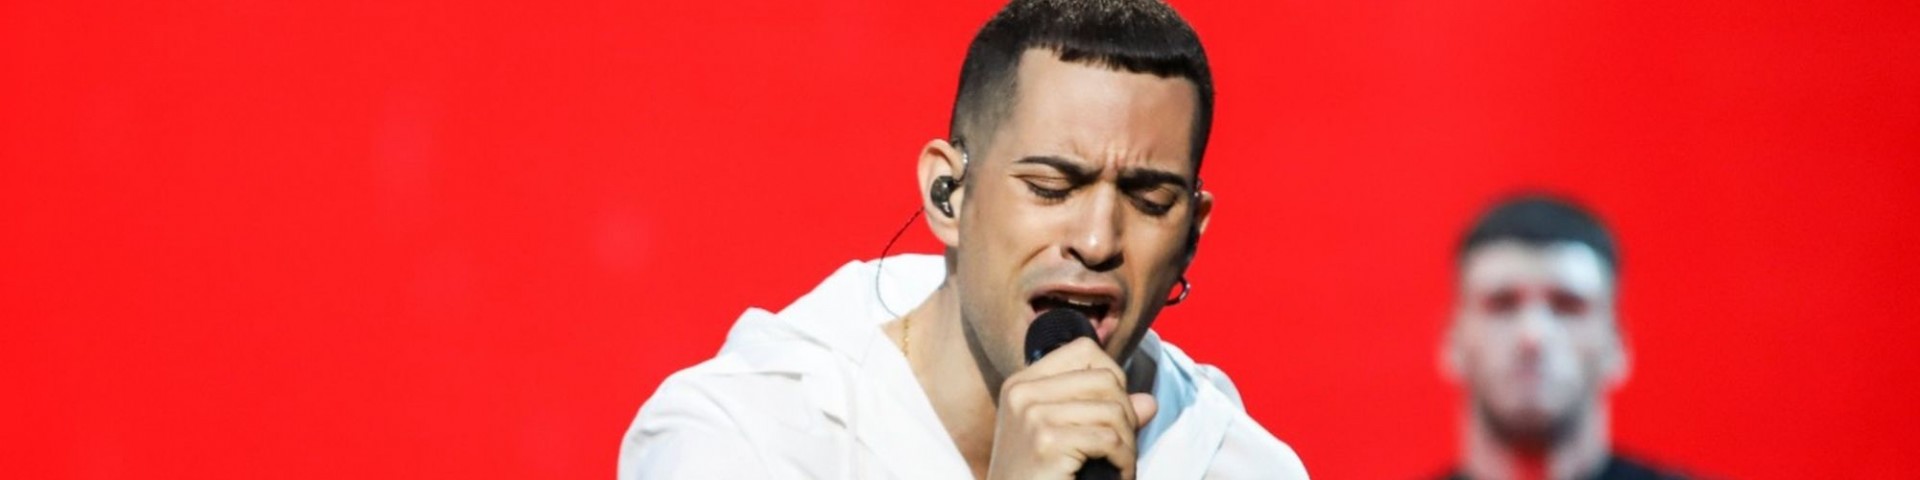 Eurovision 2019: "Soldi" di Mahmood vince il premio come più ascoltato su Spotify